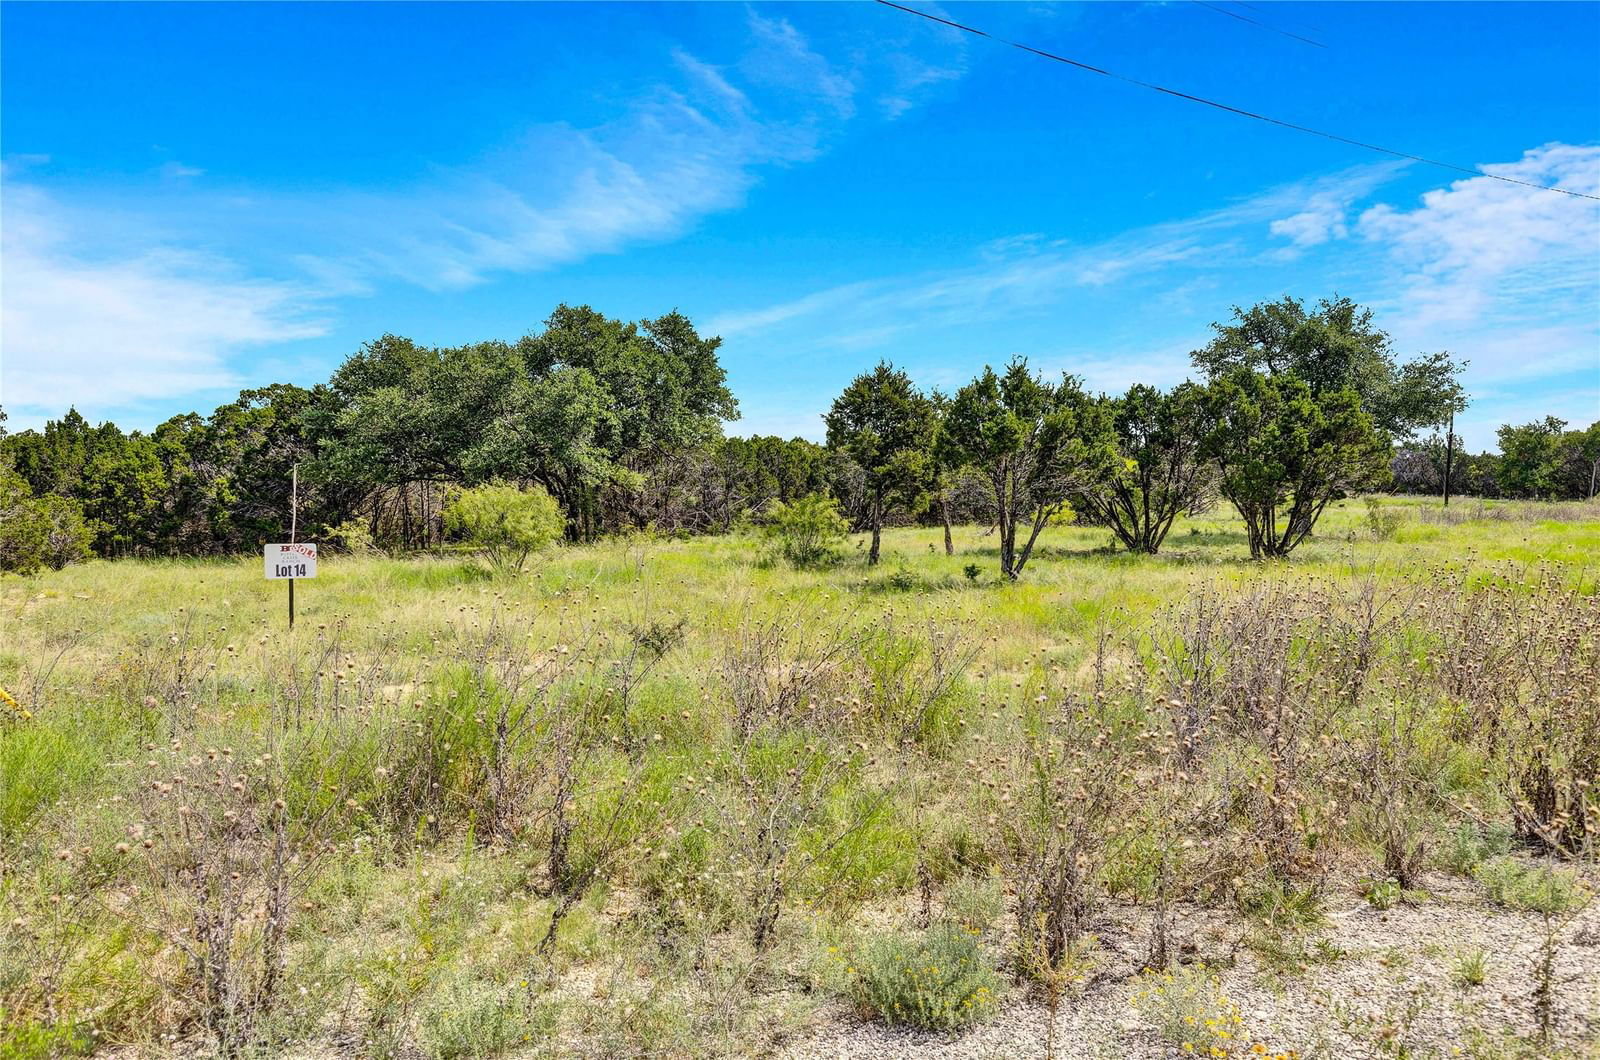 Real estate property located at 443 Deer Run, Coryell, Buffalo Creek Ranch, Evant, TX, US